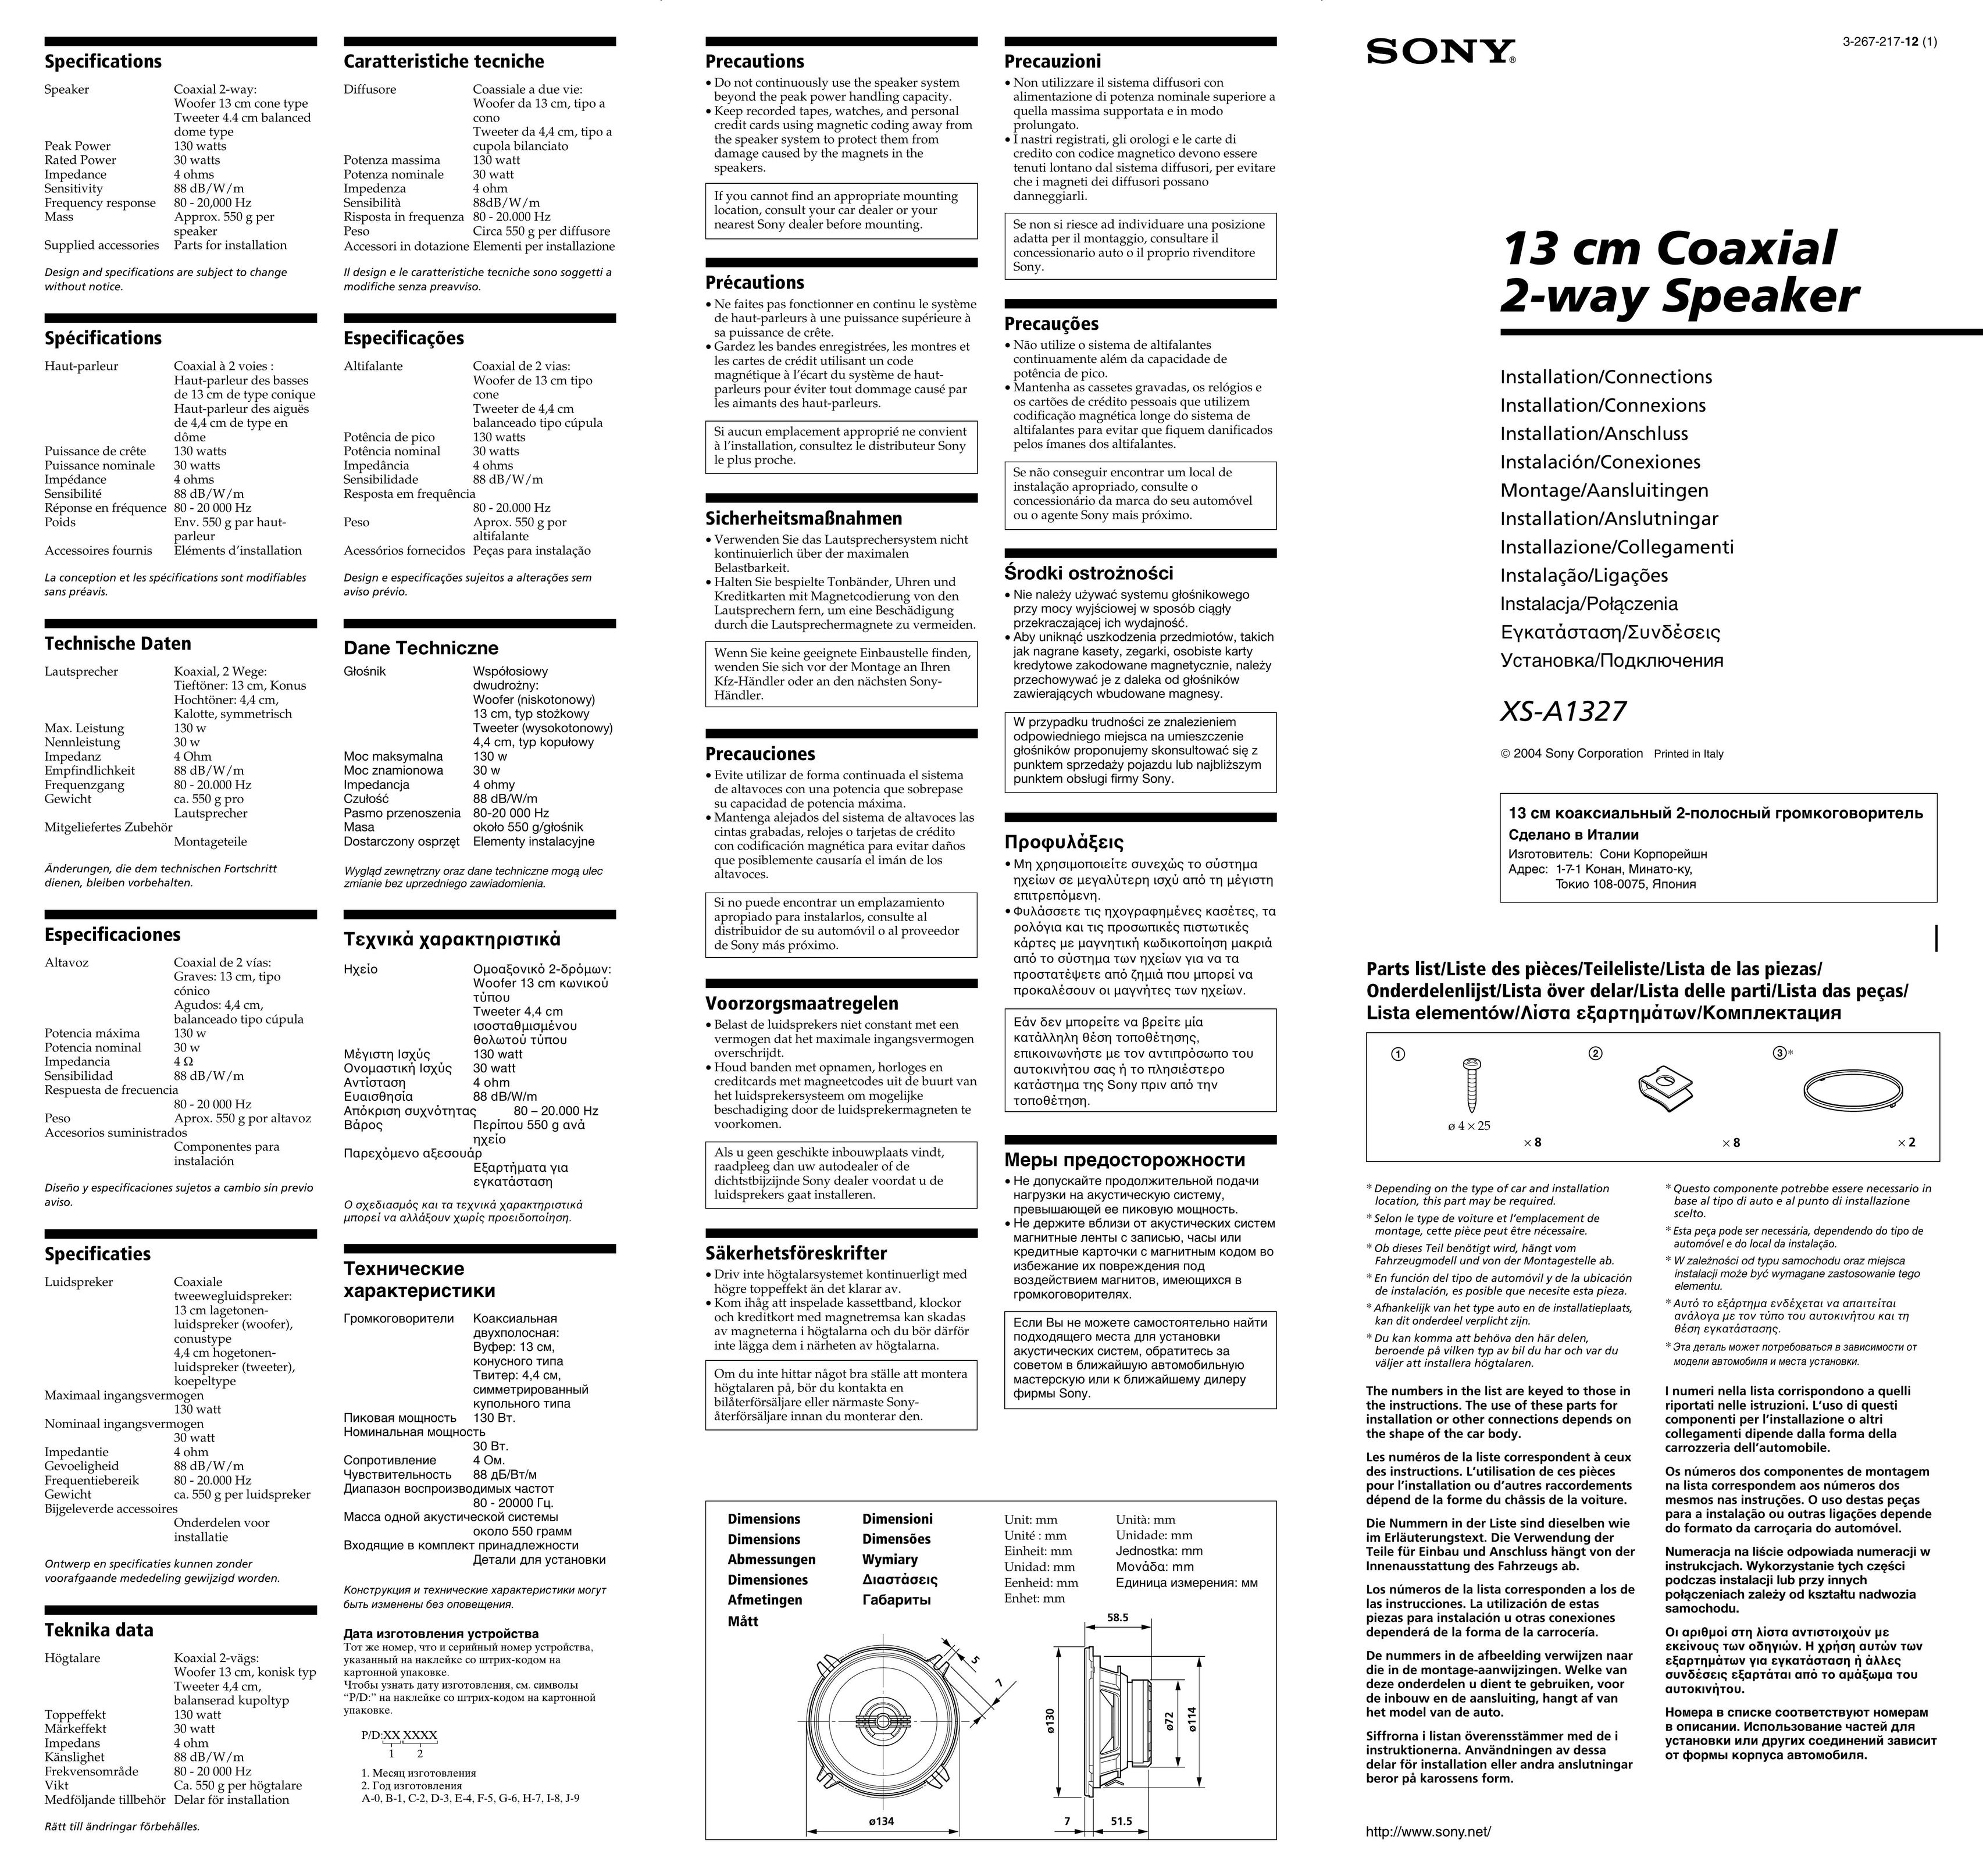 Sony A1327 Speaker User Manual